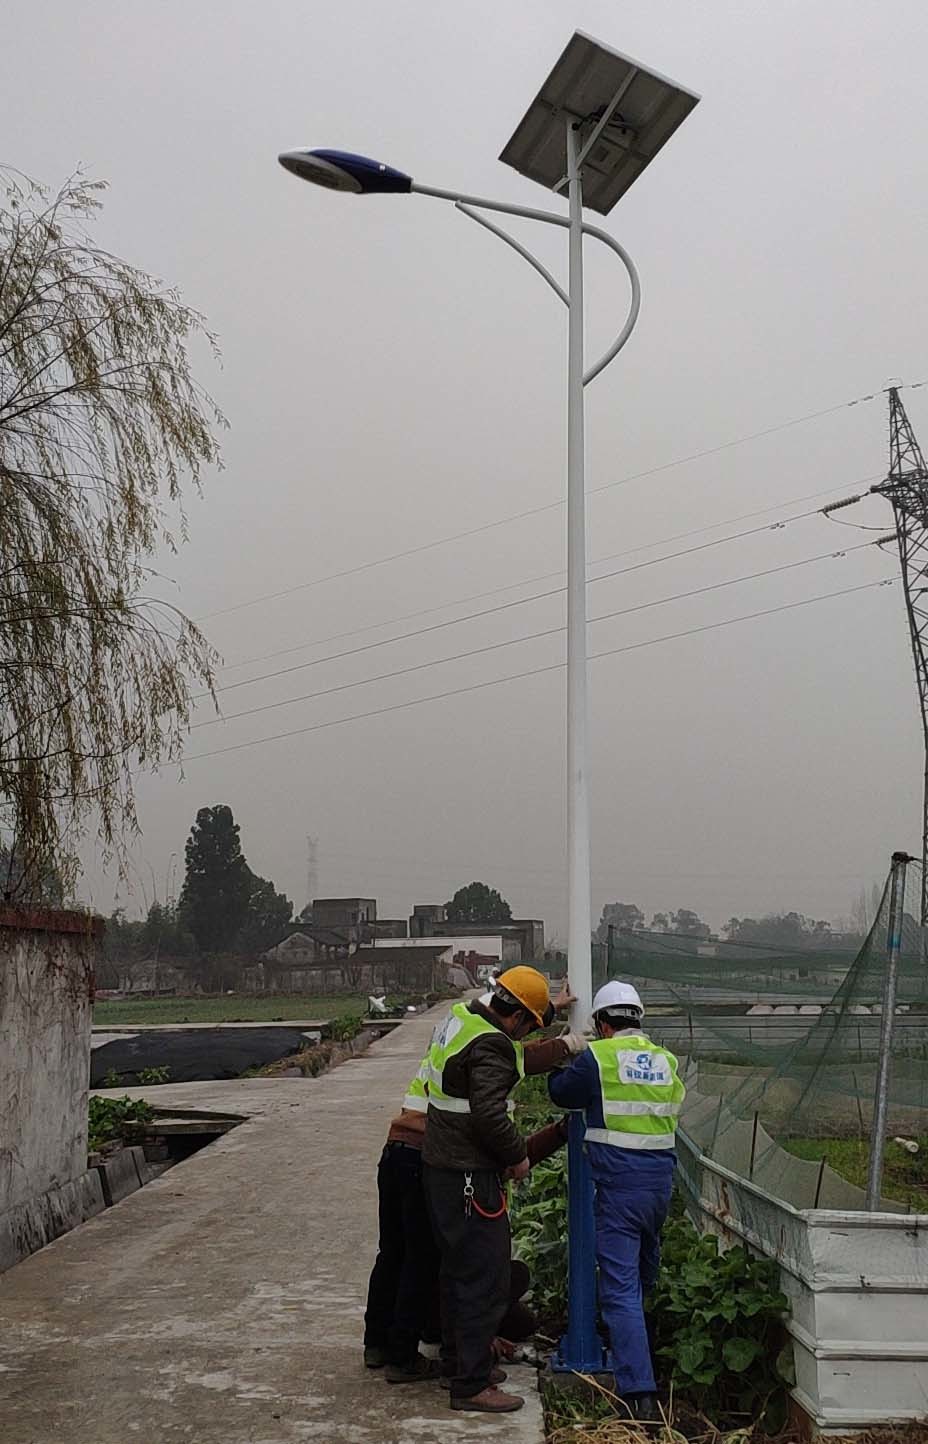 Gjashtë metra 30 W për projektin e lampave diellore të rrugës